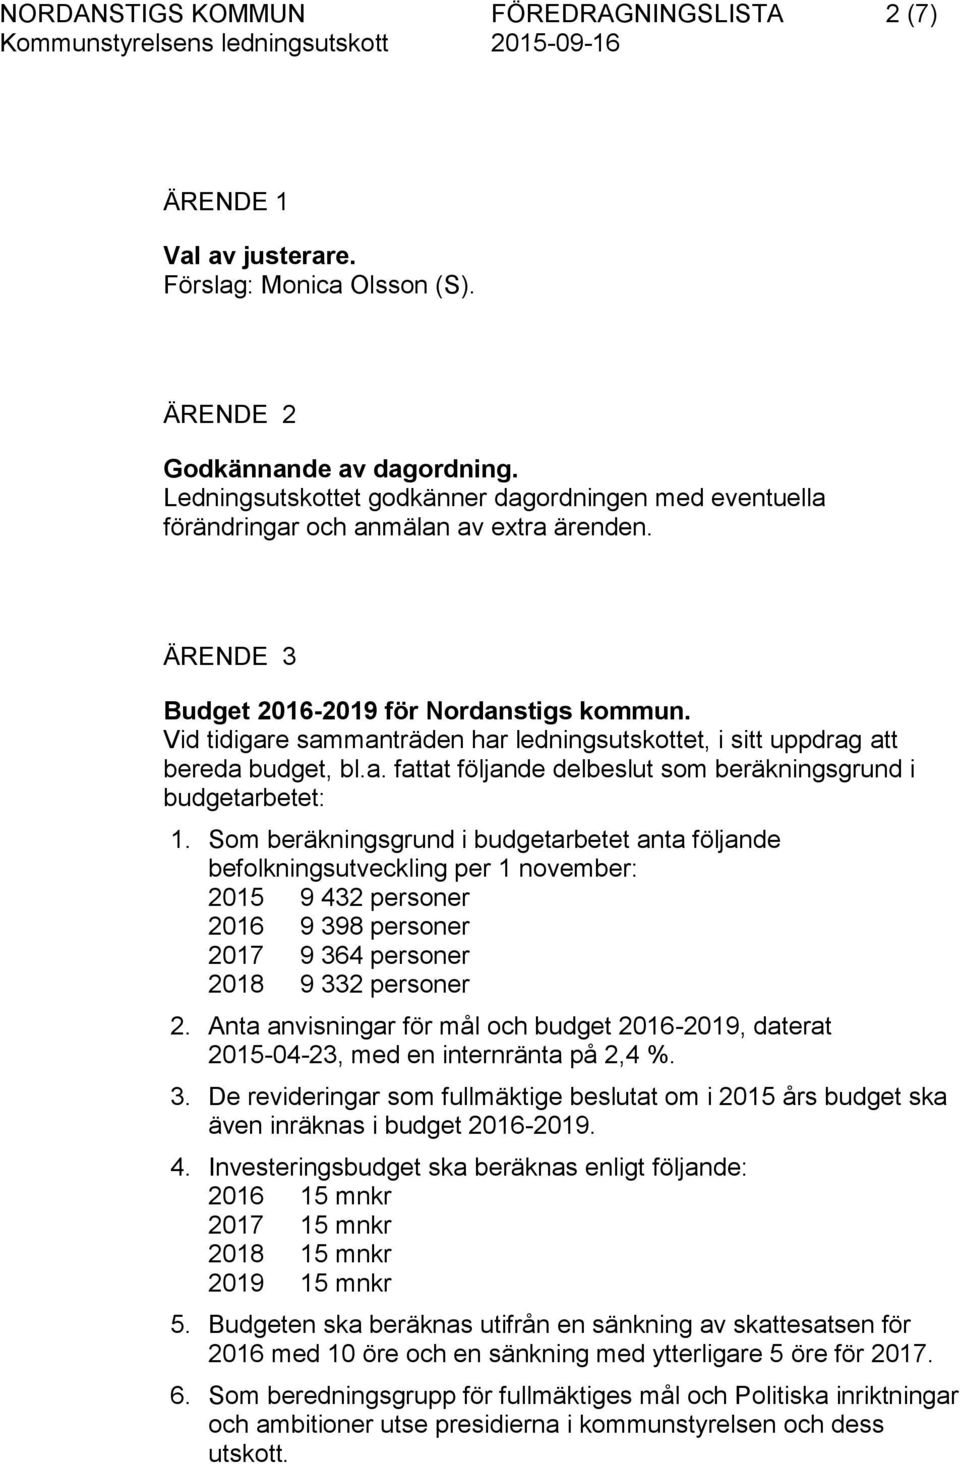 Vid tidigare sammanträden har ledningsutskottet, i sitt uppdrag att bereda budget, bl.a. fattat följande delbeslut som beräkningsgrund i budgetarbetet: 1.